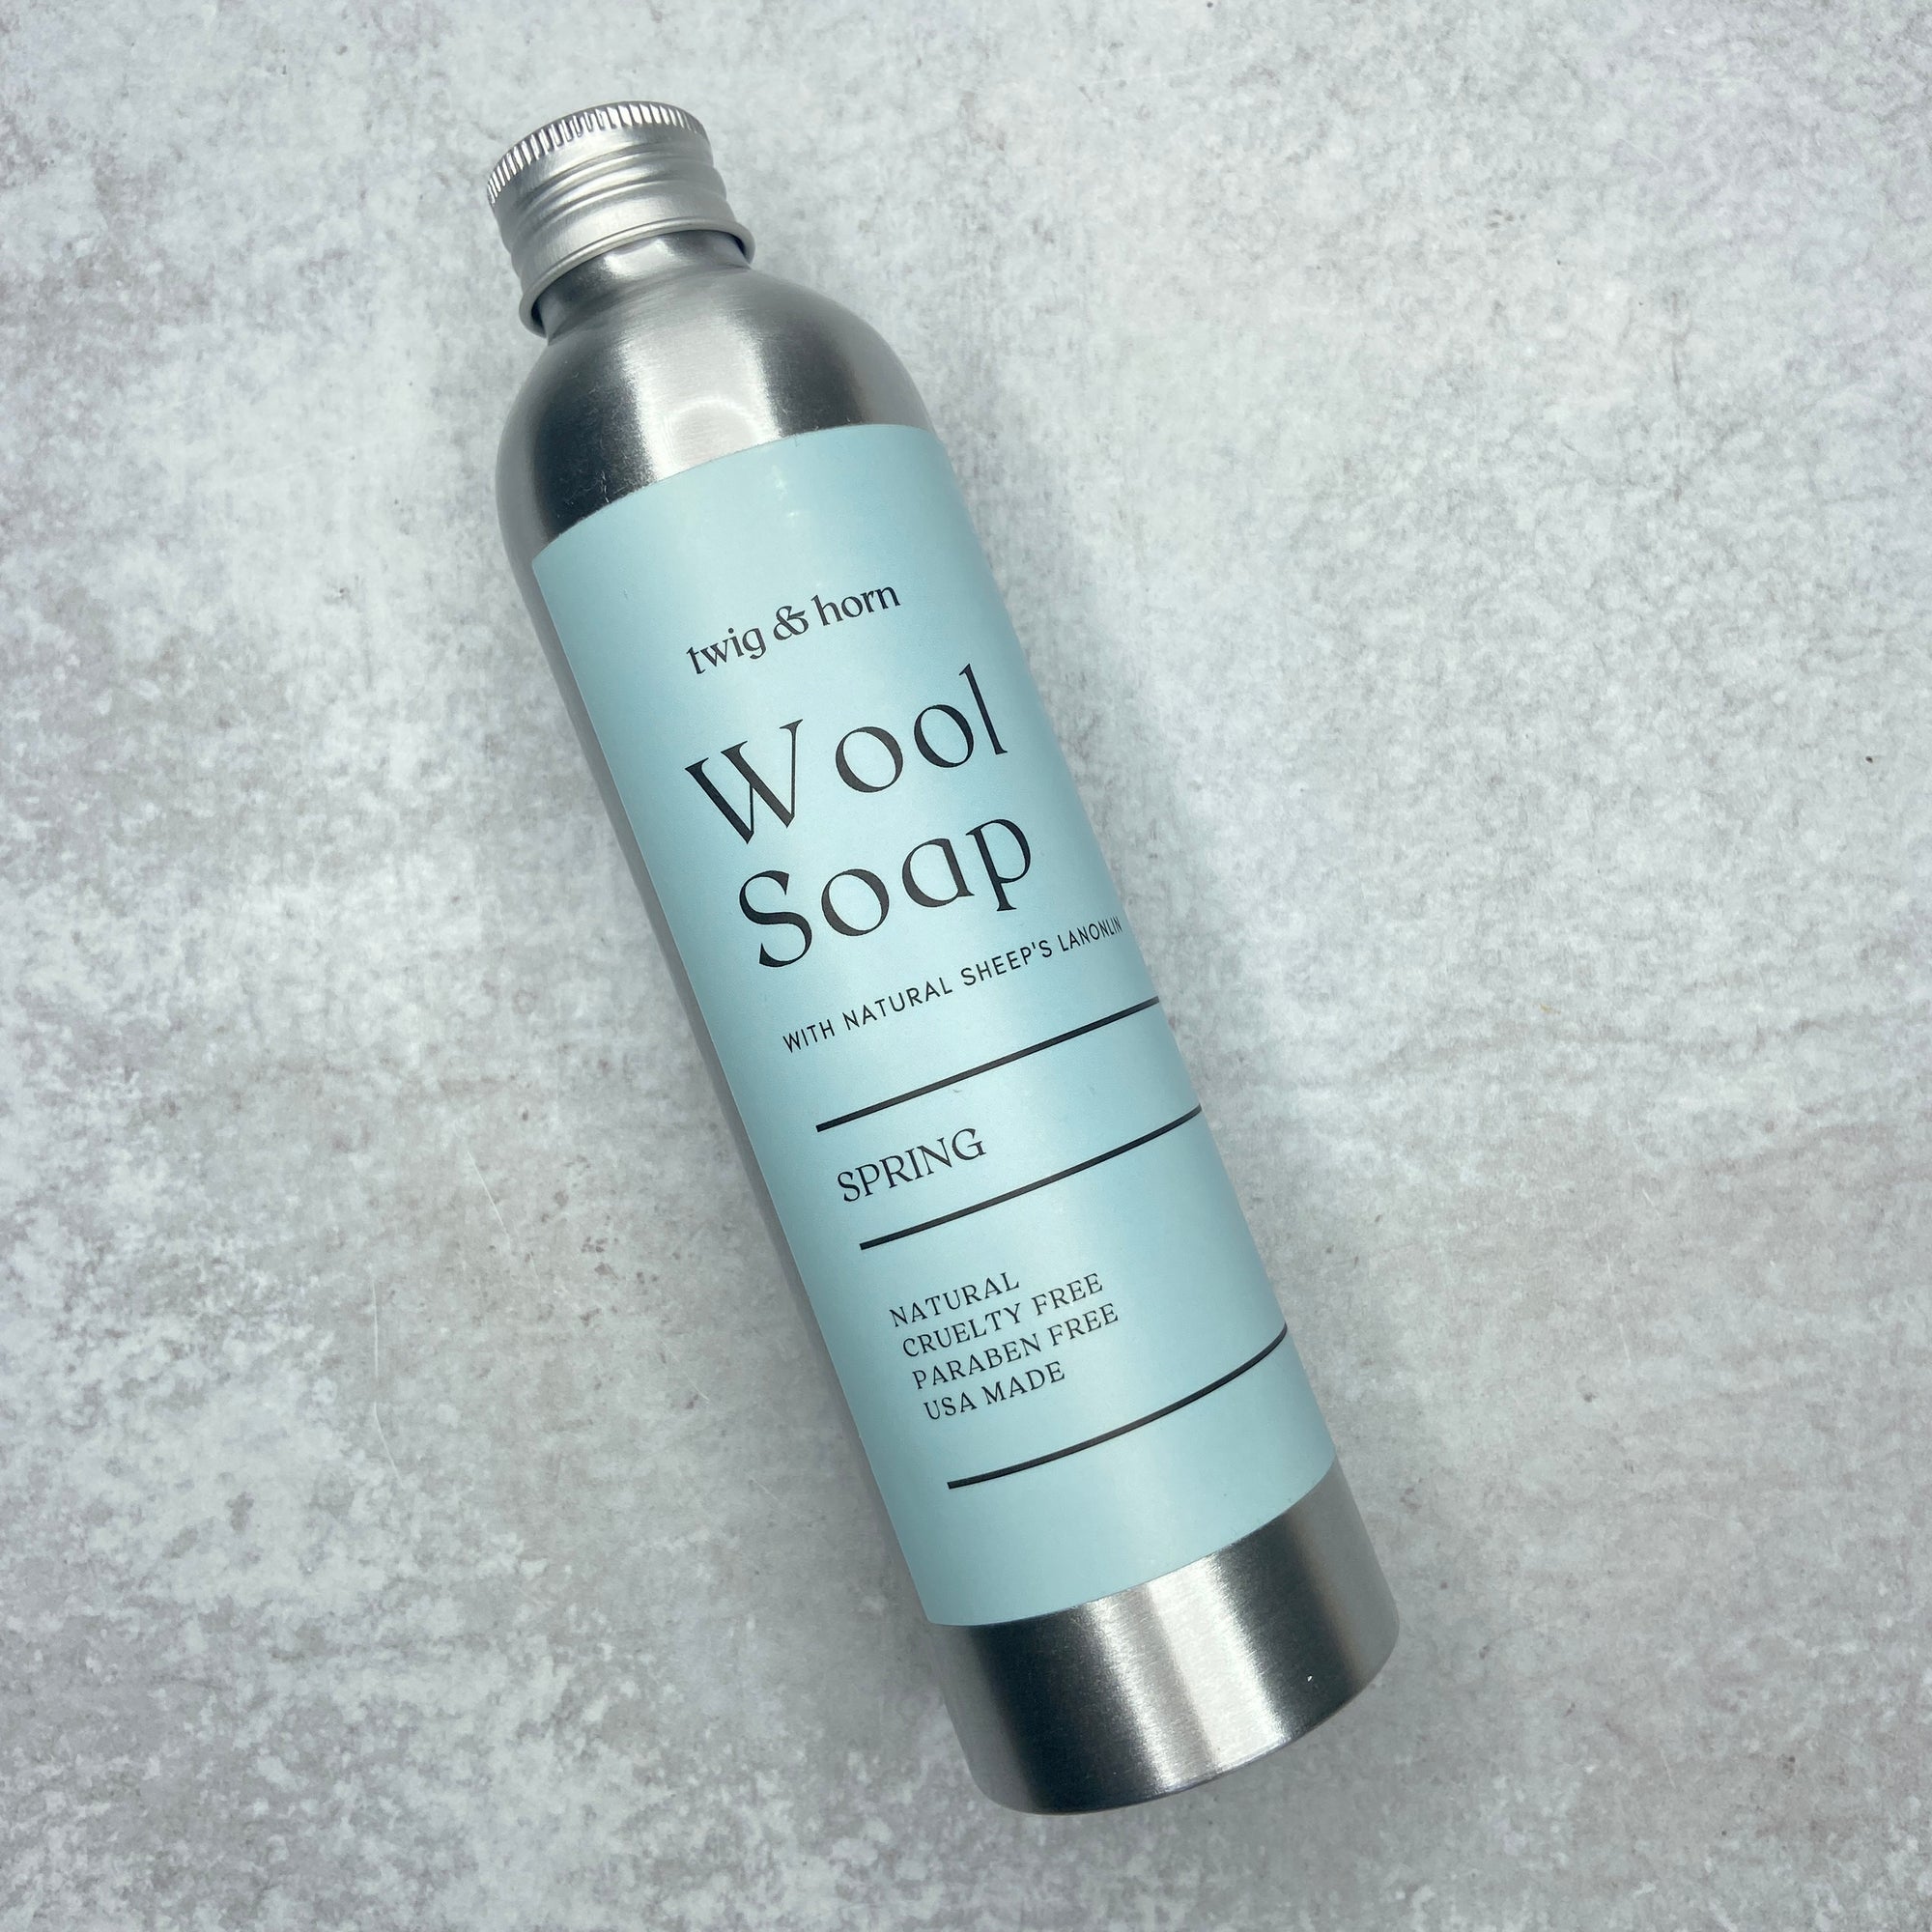 Lanolin Wool Soap